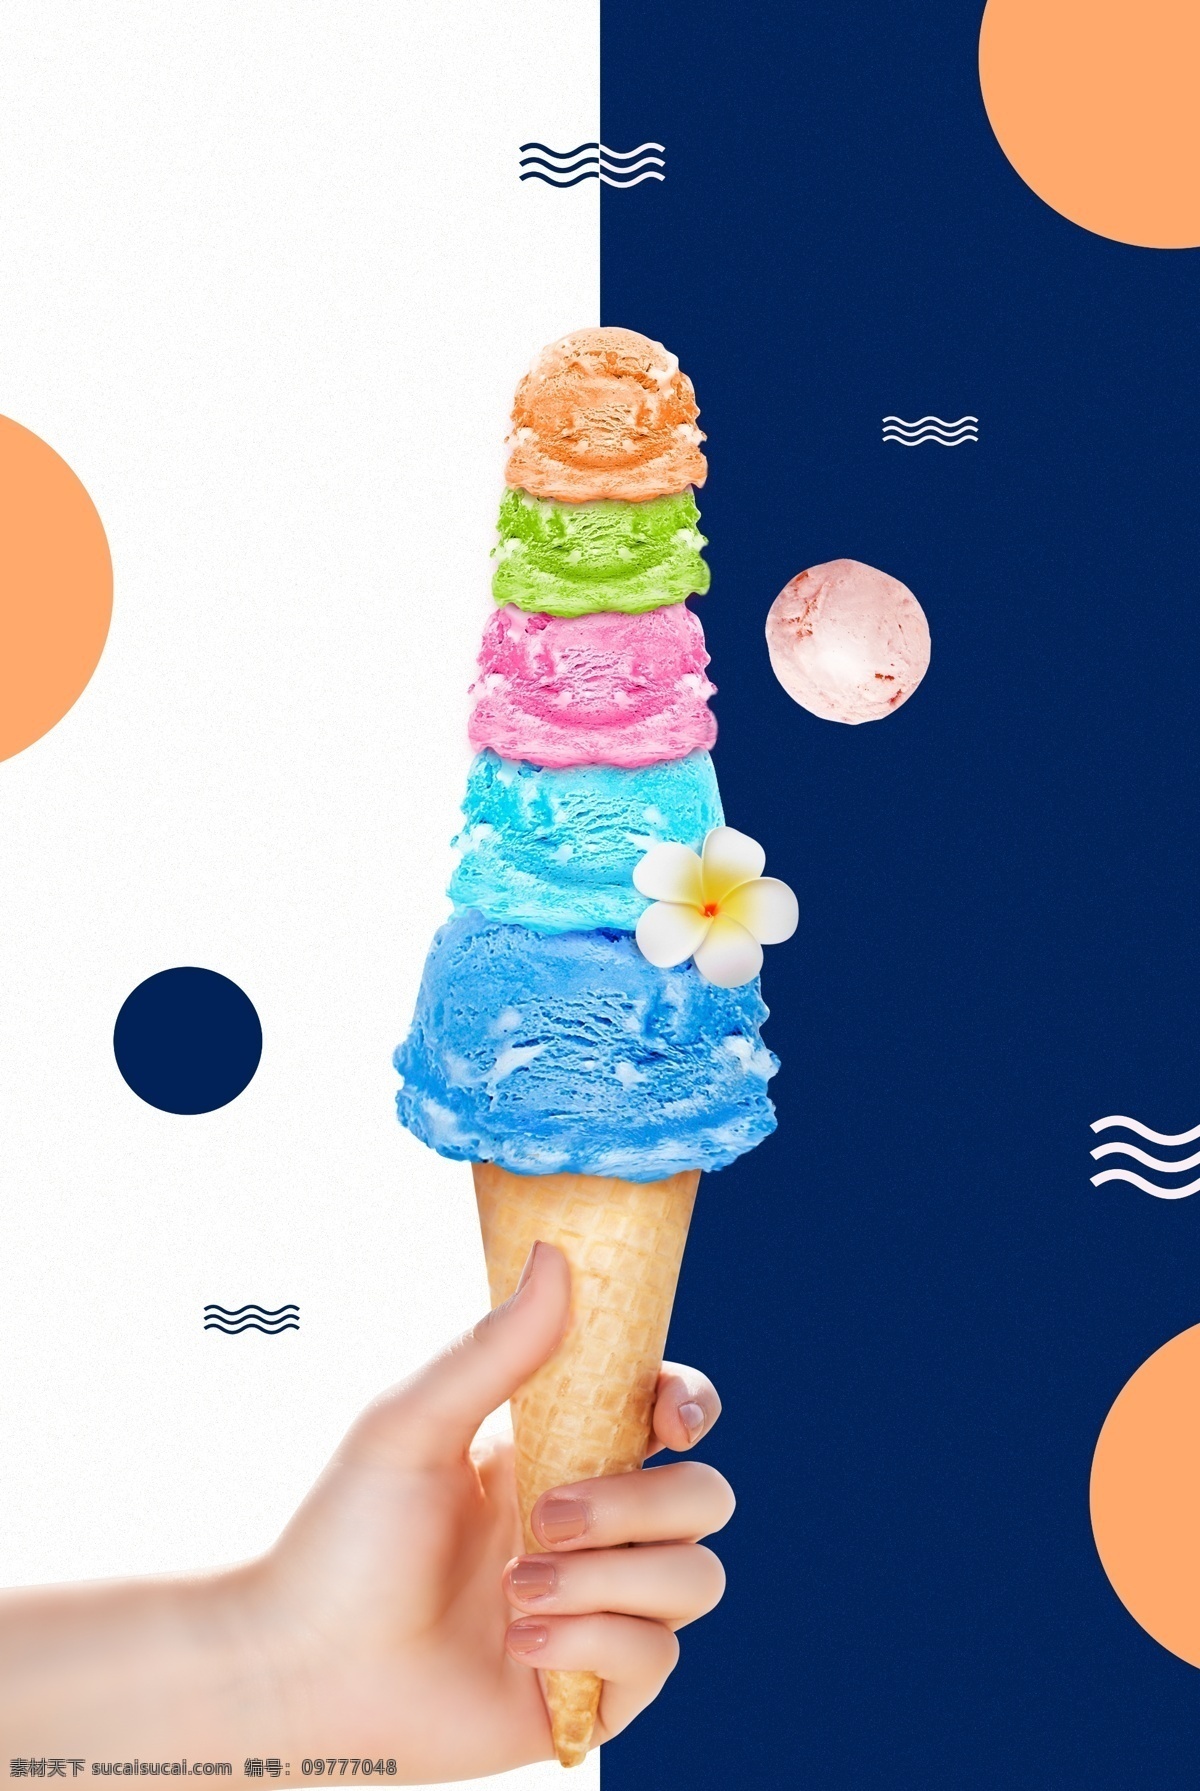 夏季 酷暑 促销 五彩缤纷 冰淇淋 背景 海报 大暑 酷爽 橙色 深蓝 圆形 手 握住 五指